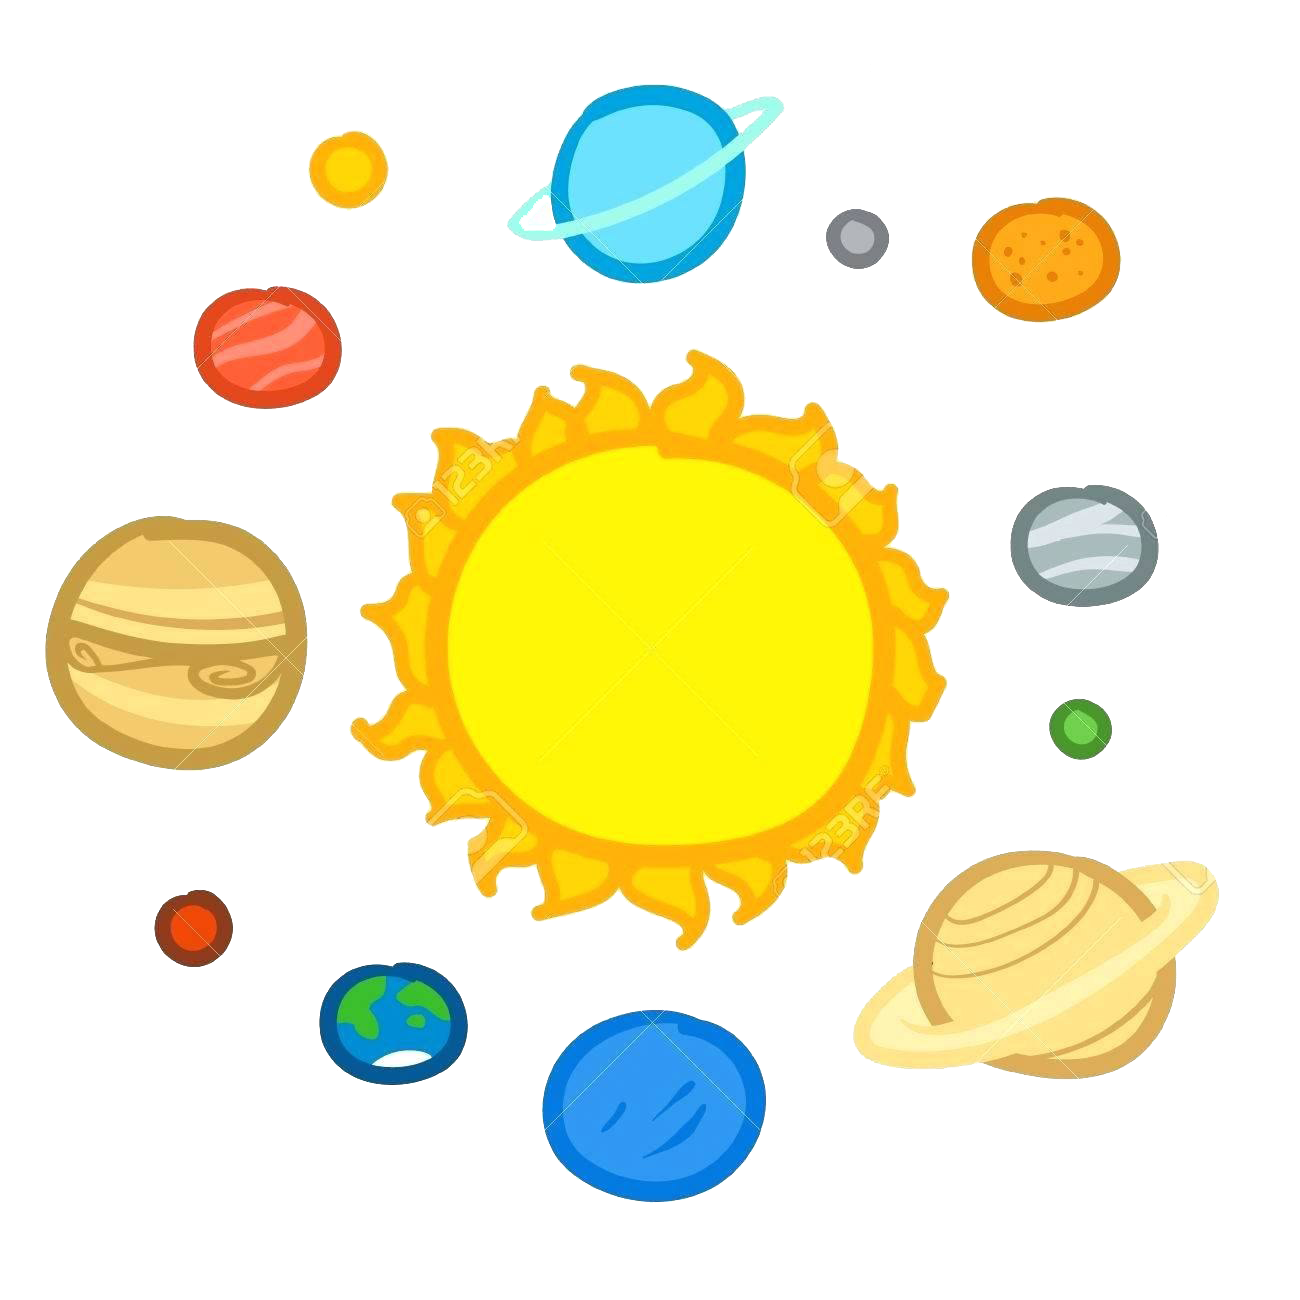 Système solaire Planet Image Transparente